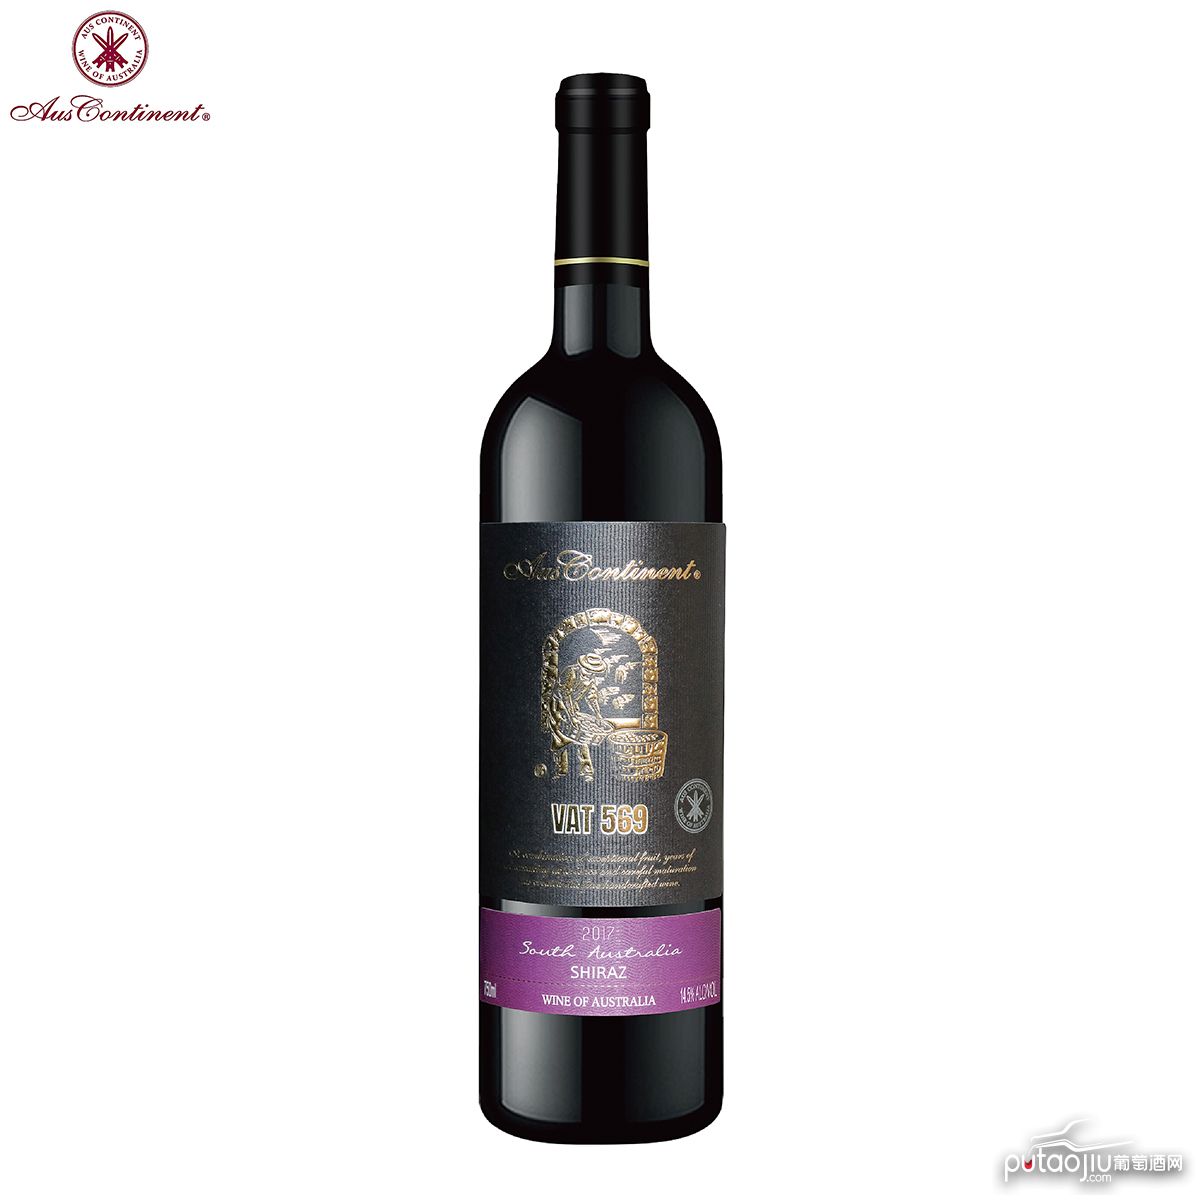 澳大利亚南澳产区澳洲大陆酒庄西拉VAT 569 干红葡萄酒红酒